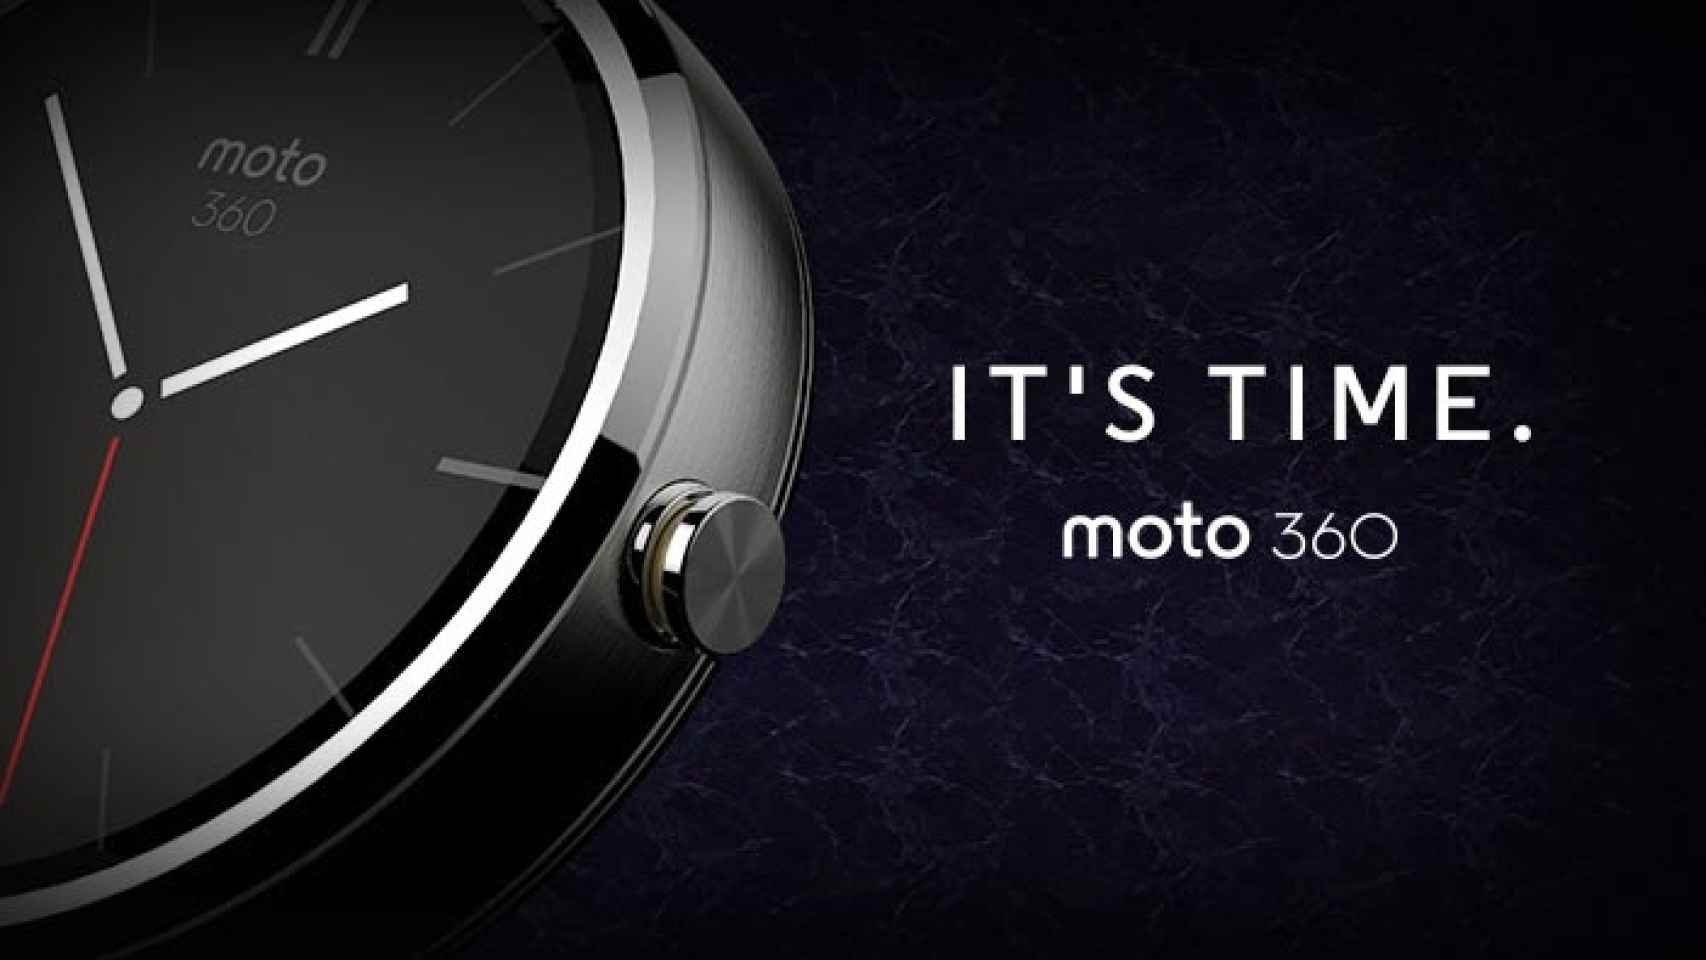 Moto 360, el reloj inteligente de Motorola con Android Wear se presenta al mundo